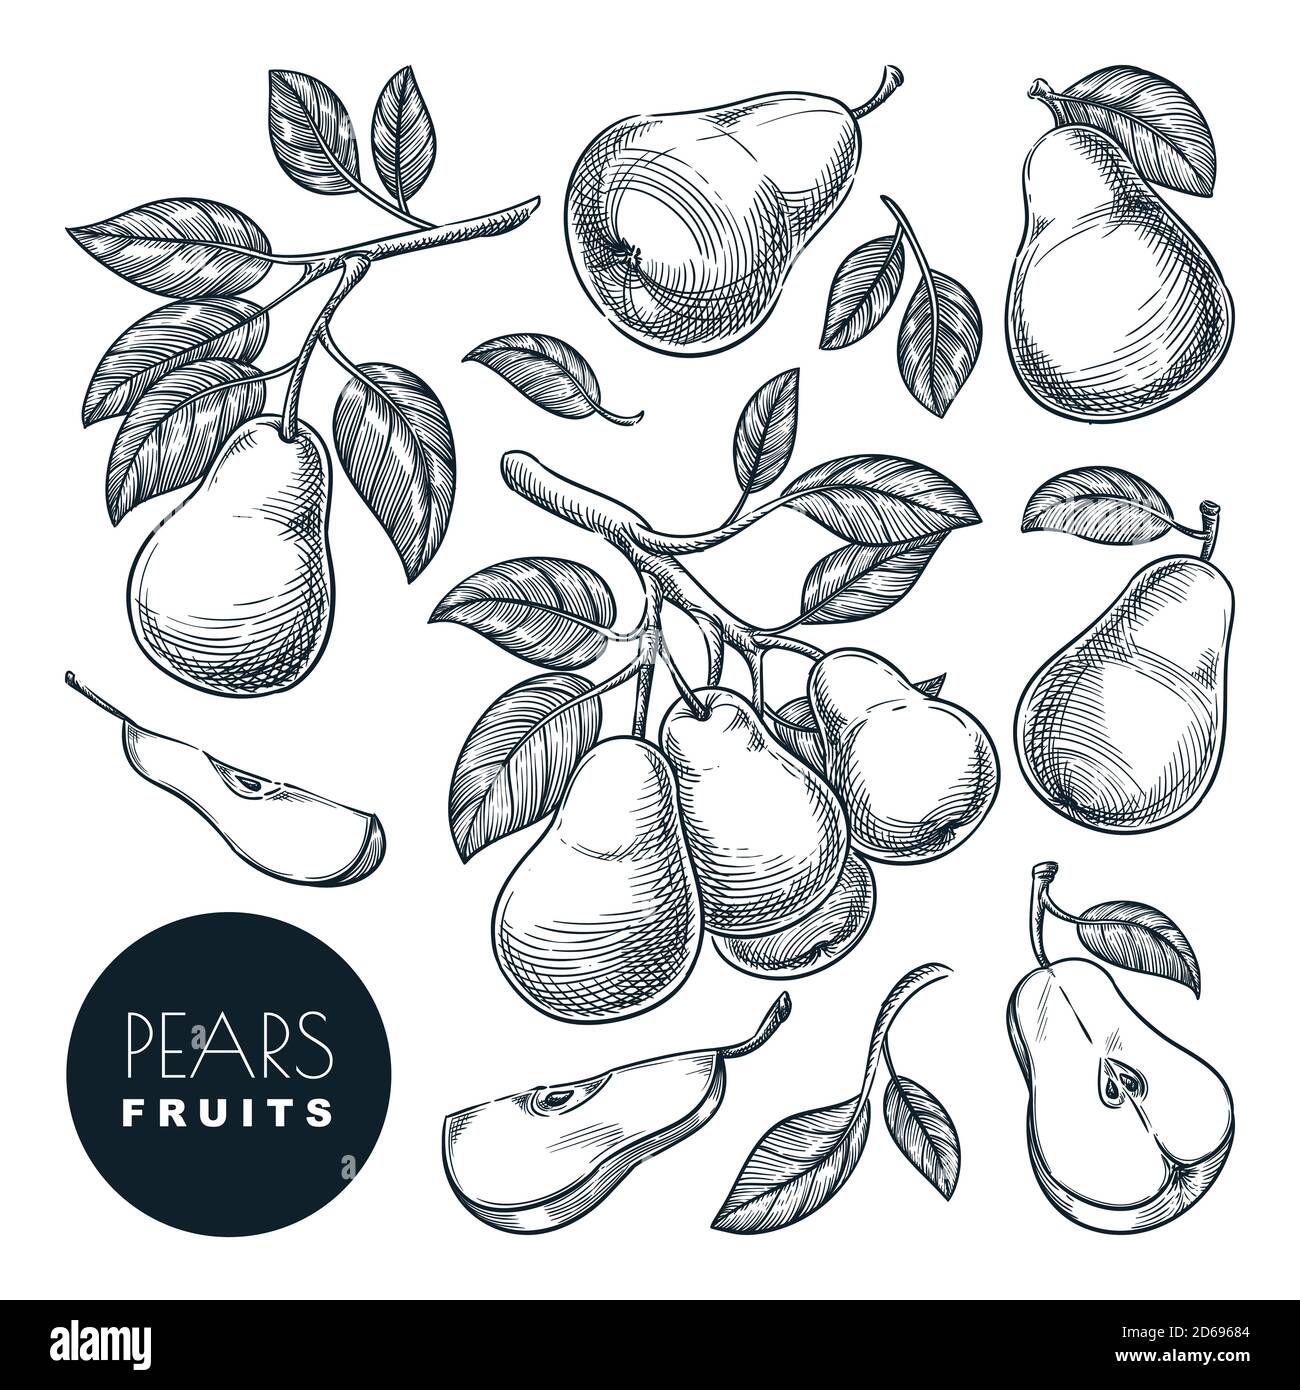 Illustrazione vettoriale dello schizzo delle pere. Raccolta di frutta dolce, giardino disegnato a mano agricoltura e fattoria elementi di progettazione isolati. Illustrazione Vettoriale